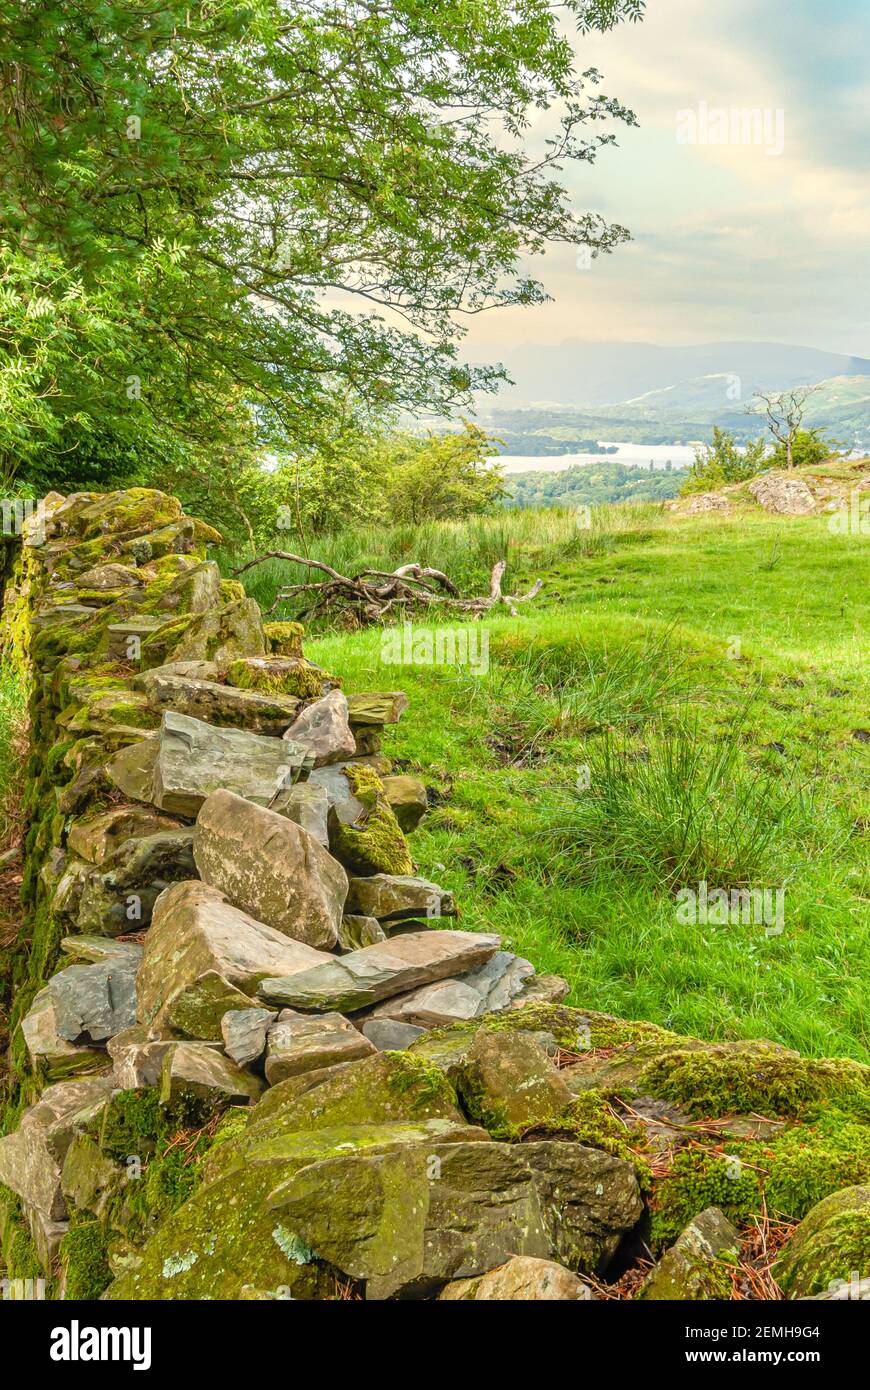 Pared de piedra seca en un paisaje en el Parque Nacional del Distrito de los Lagos, Cumbria, Inglaterra, Reino Unido Foto de stock